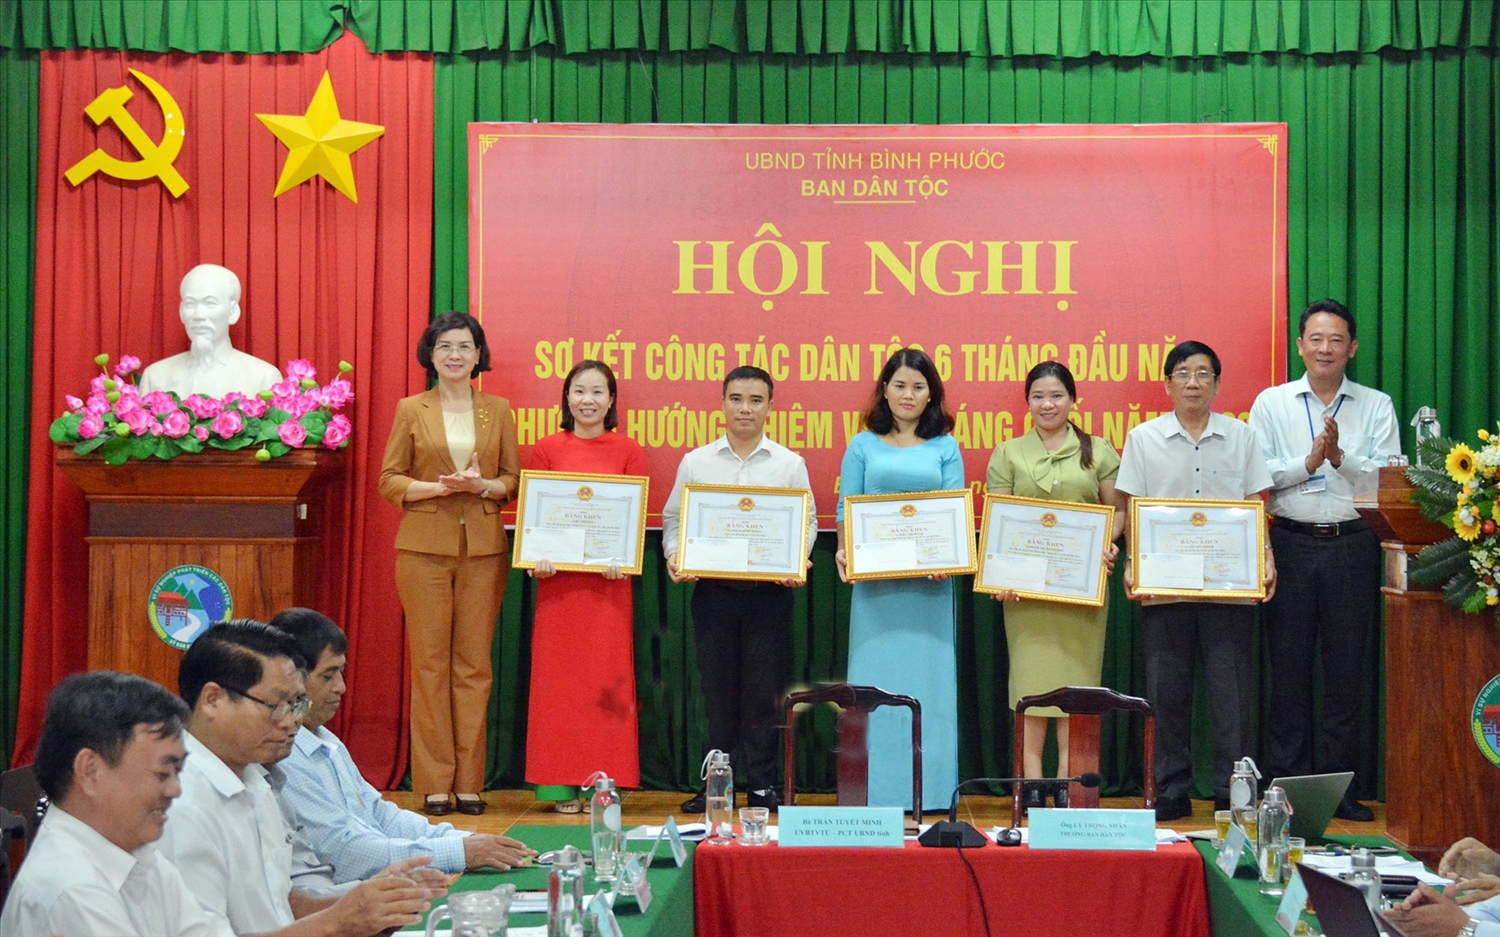 Bà Trần Tuyết Minh (bìa trái) trao Bằng khen của UBND tỉnh Bình Phước cho các tập thể và cá nhân có thành tích trong công tác tham mưu triển khai thực hiện Nghị quyết số 52/2016/NQ - CP của Chính phủ.